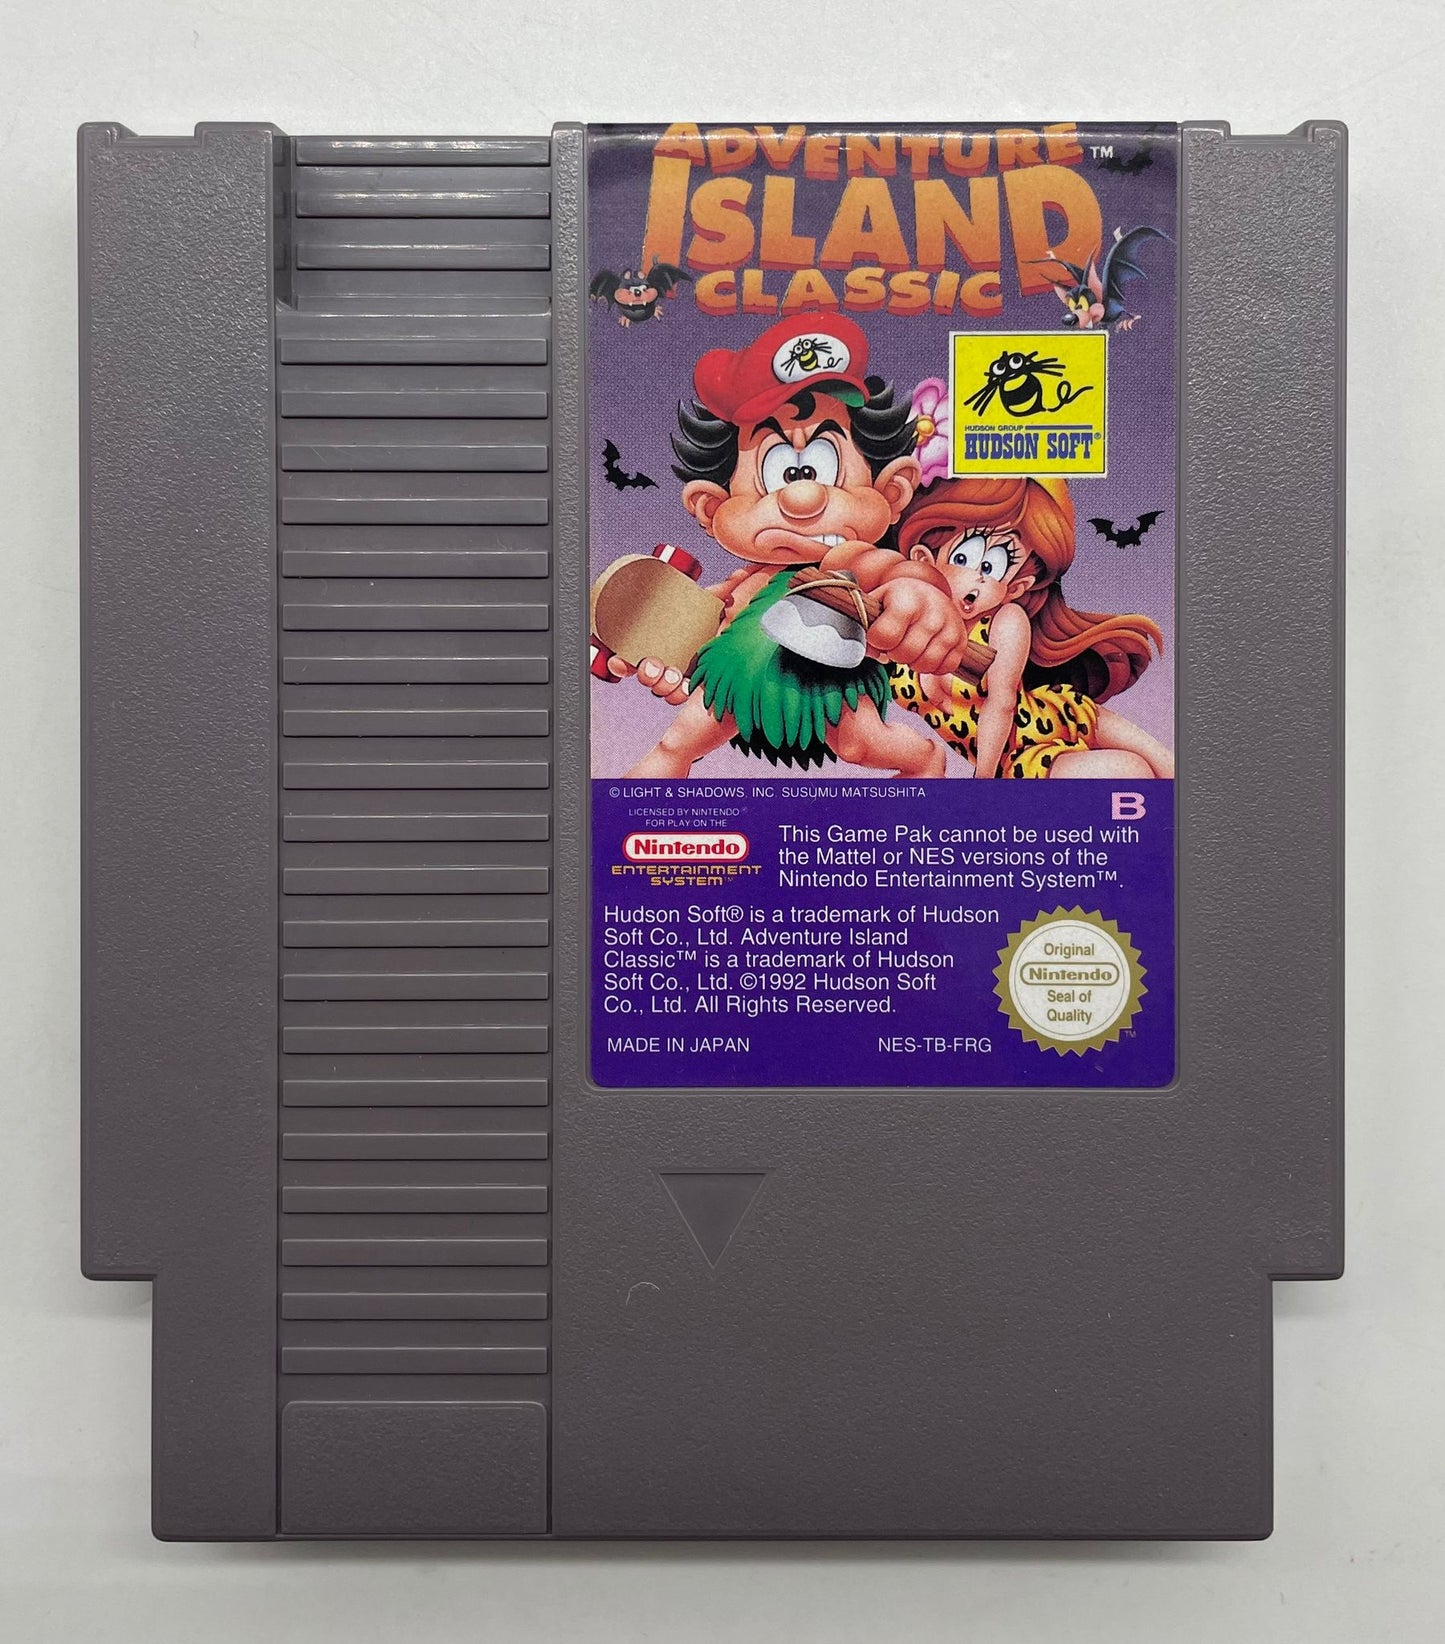 Adventure Island Classique NES